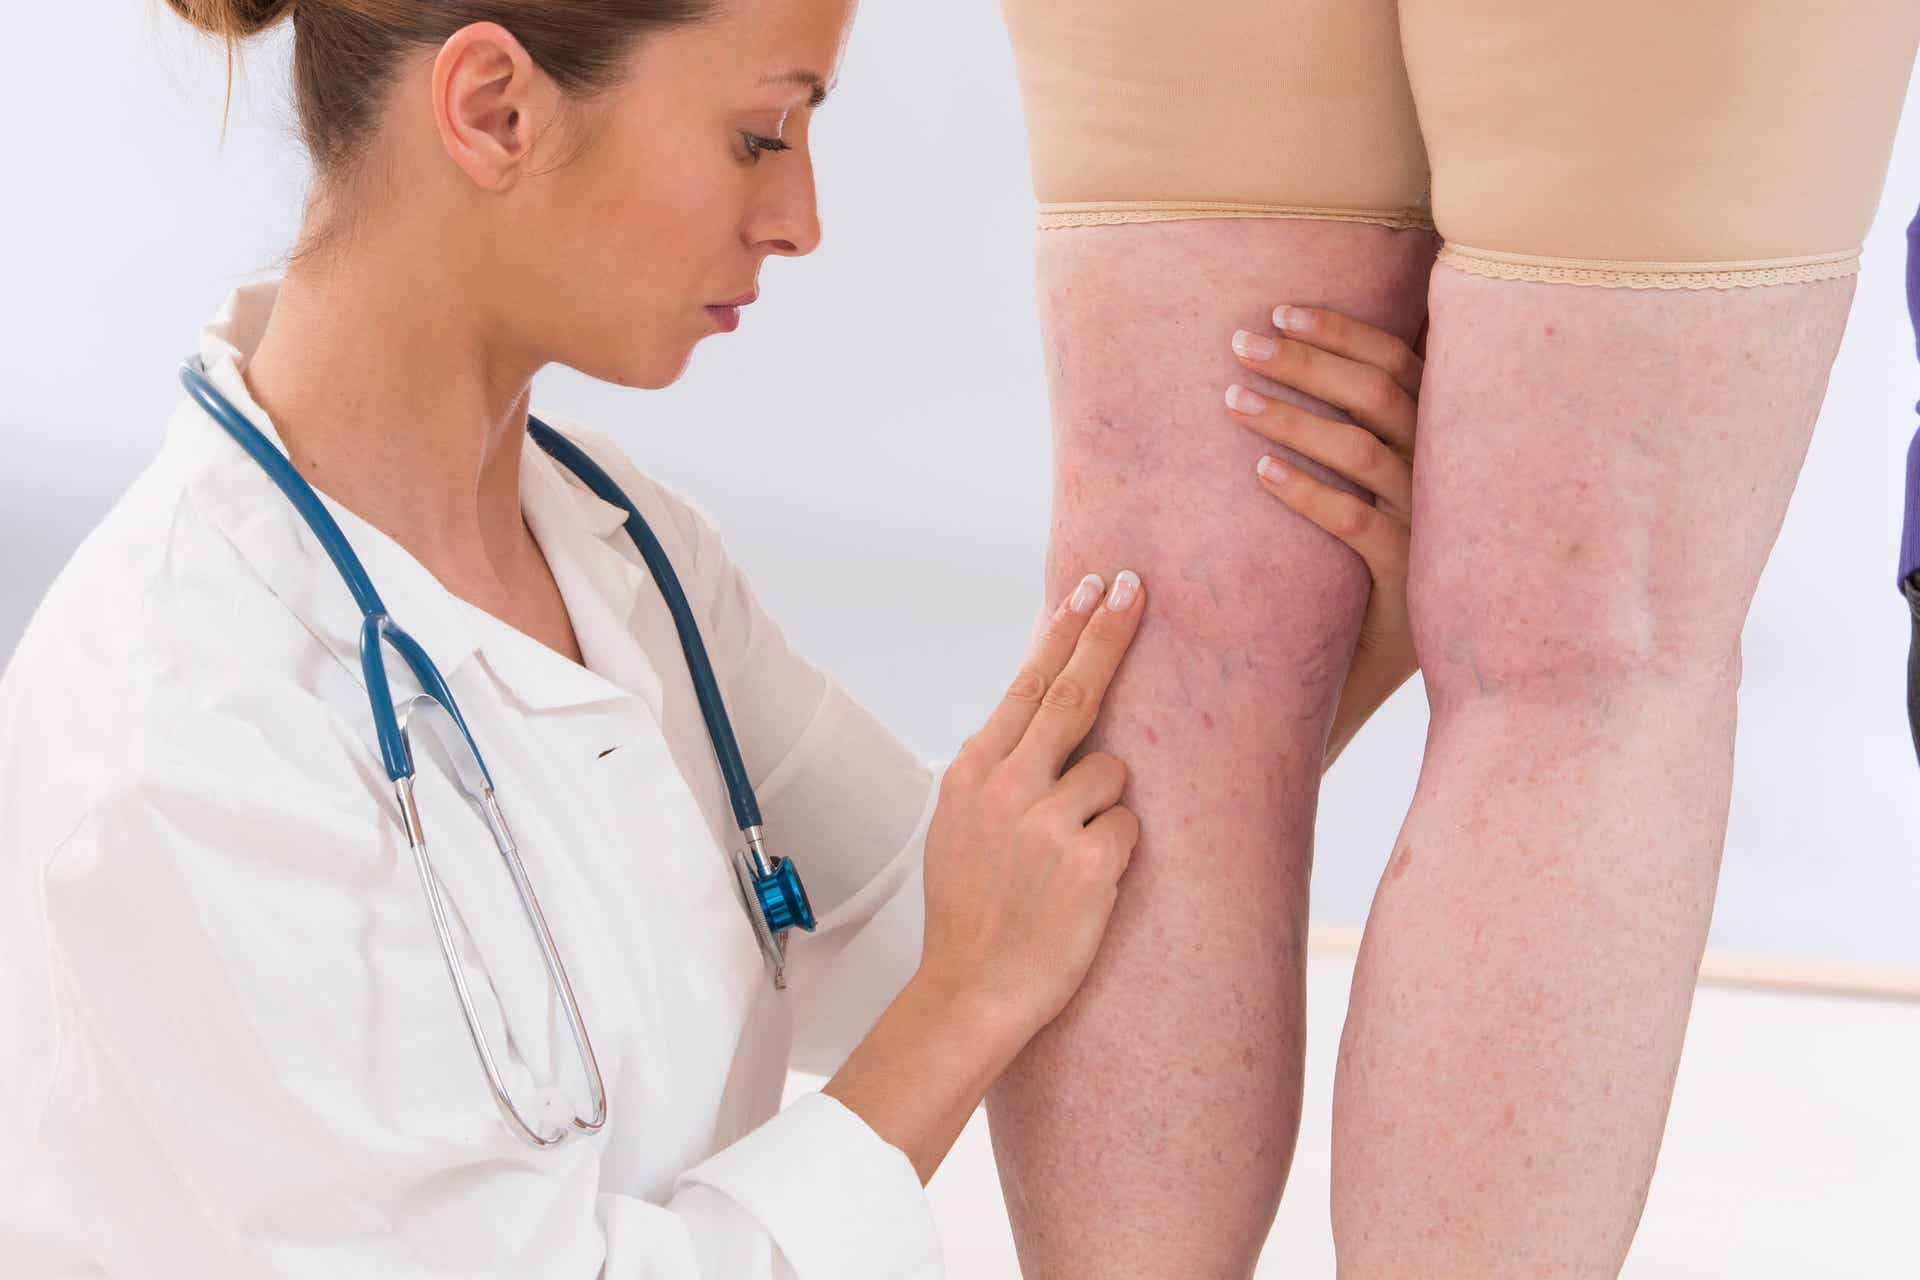 Le vene varicose sono sinonimo di cattiva circolazione nelle gambe e nei piedi.